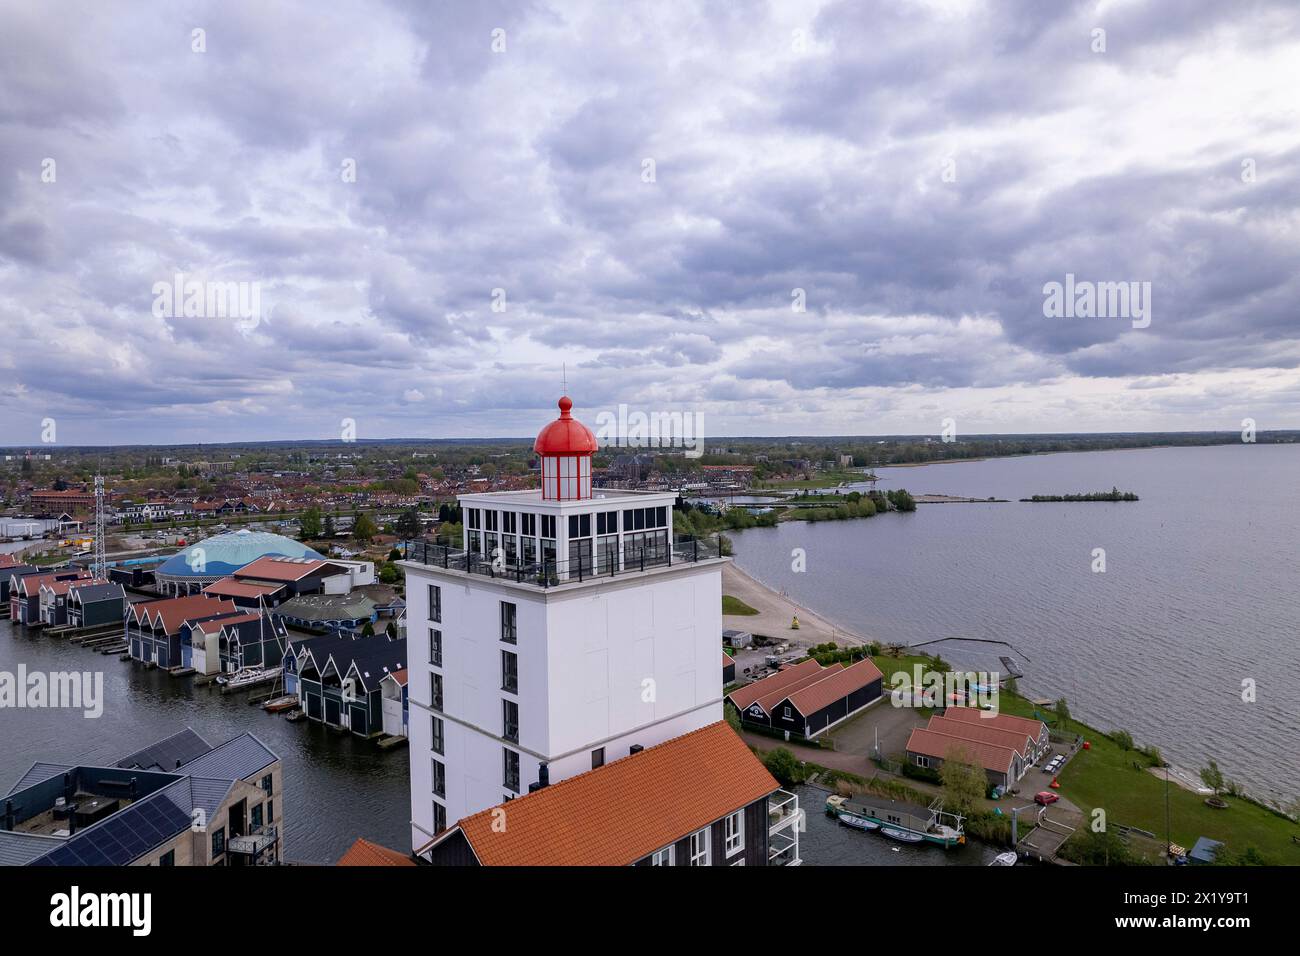 Aerea del porto ricreativo De Knar al Veluwemeer con barche da diporto e faro. Quartiere residenziale del canale olandese. Foto Stock